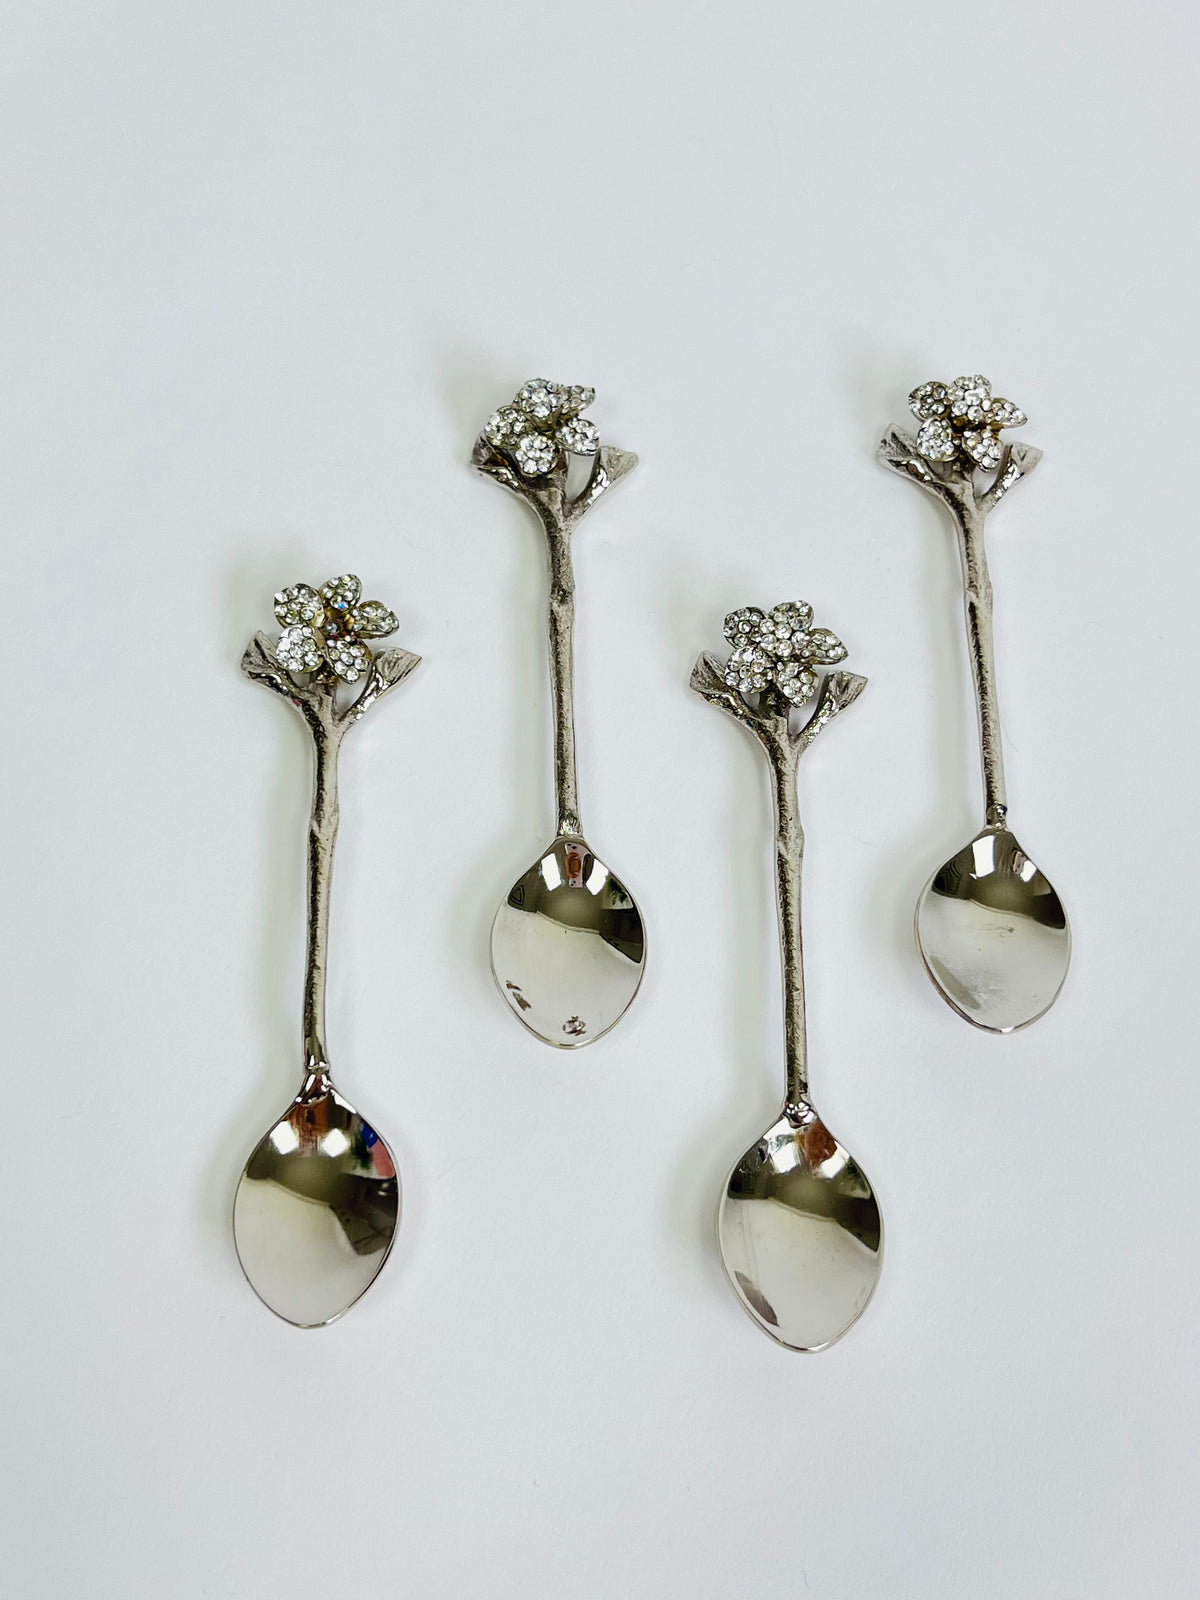 Rhinestone Flower Demitasse Spoons